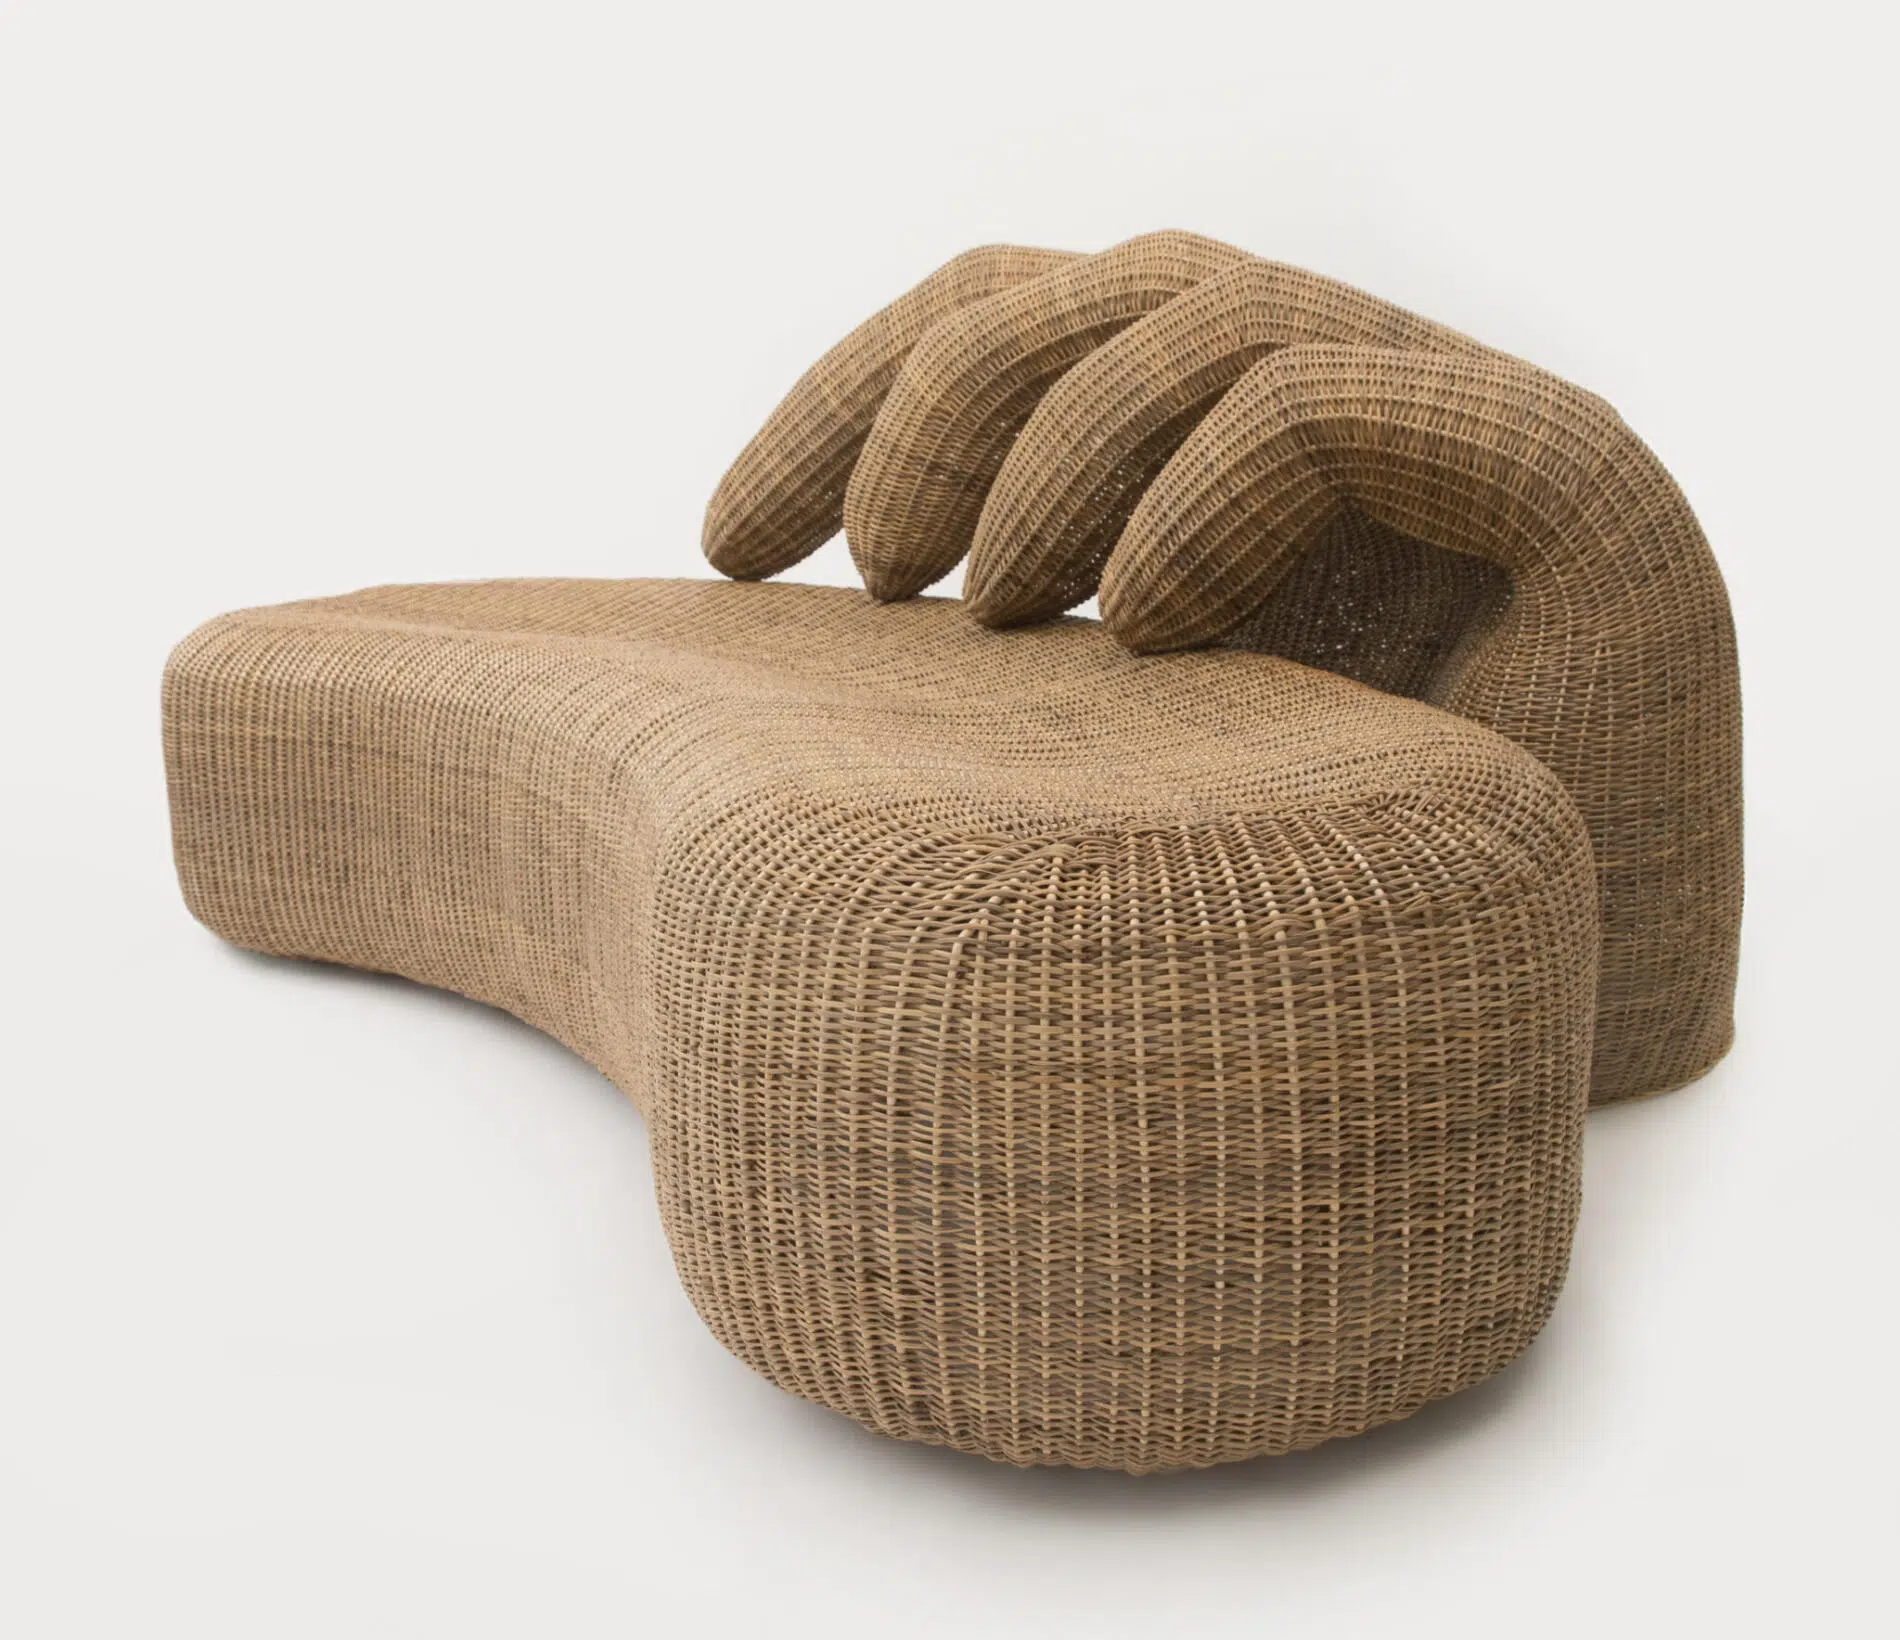 Chris Wolston sillas de mimbre sofa